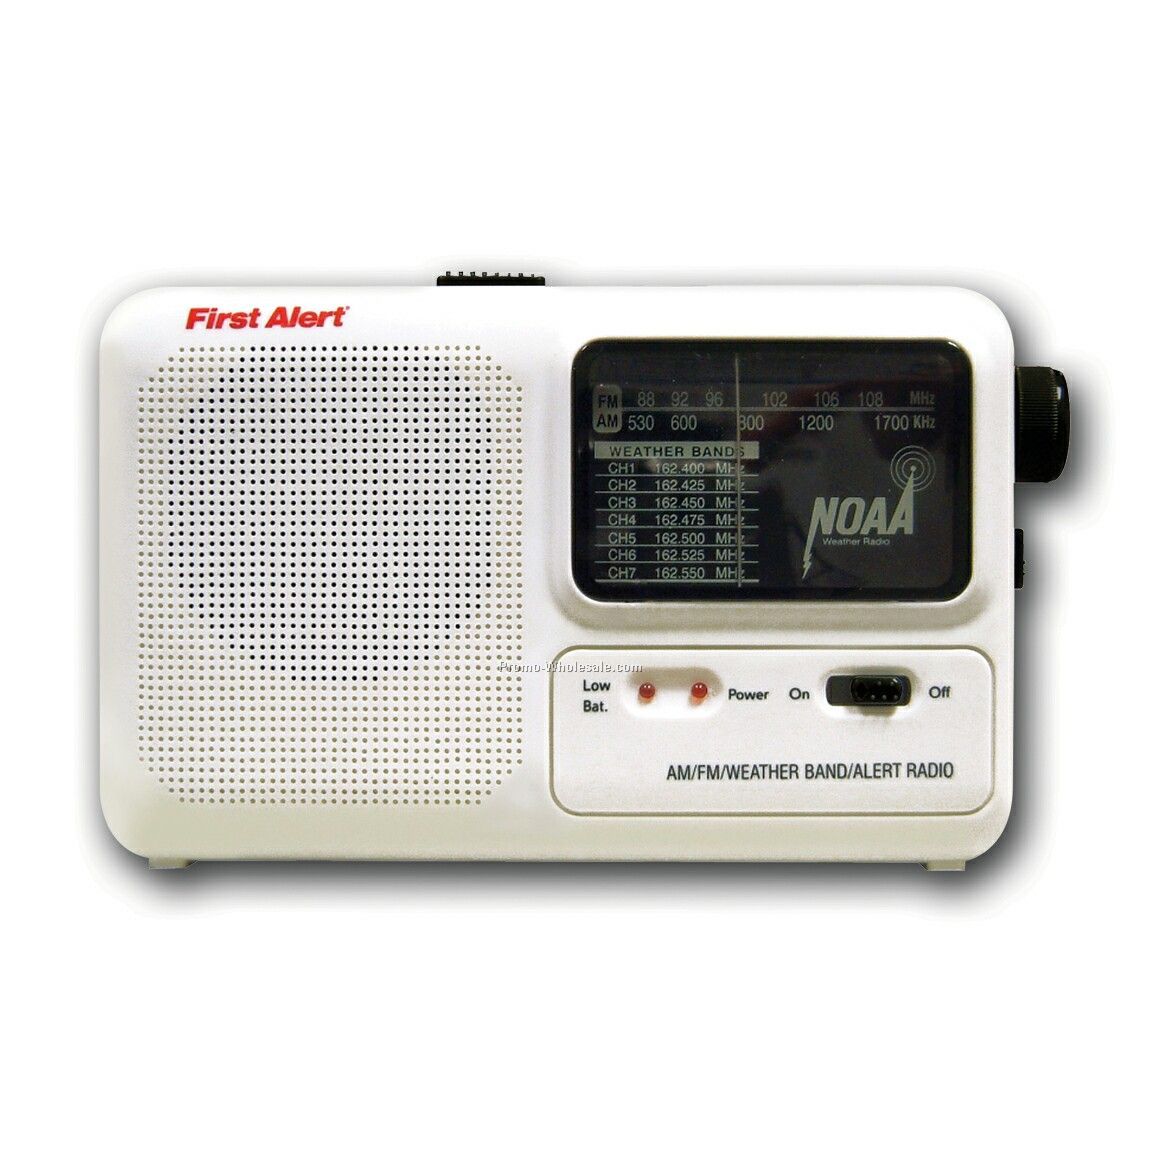 Portable AM/FM Emergency Alert Radio